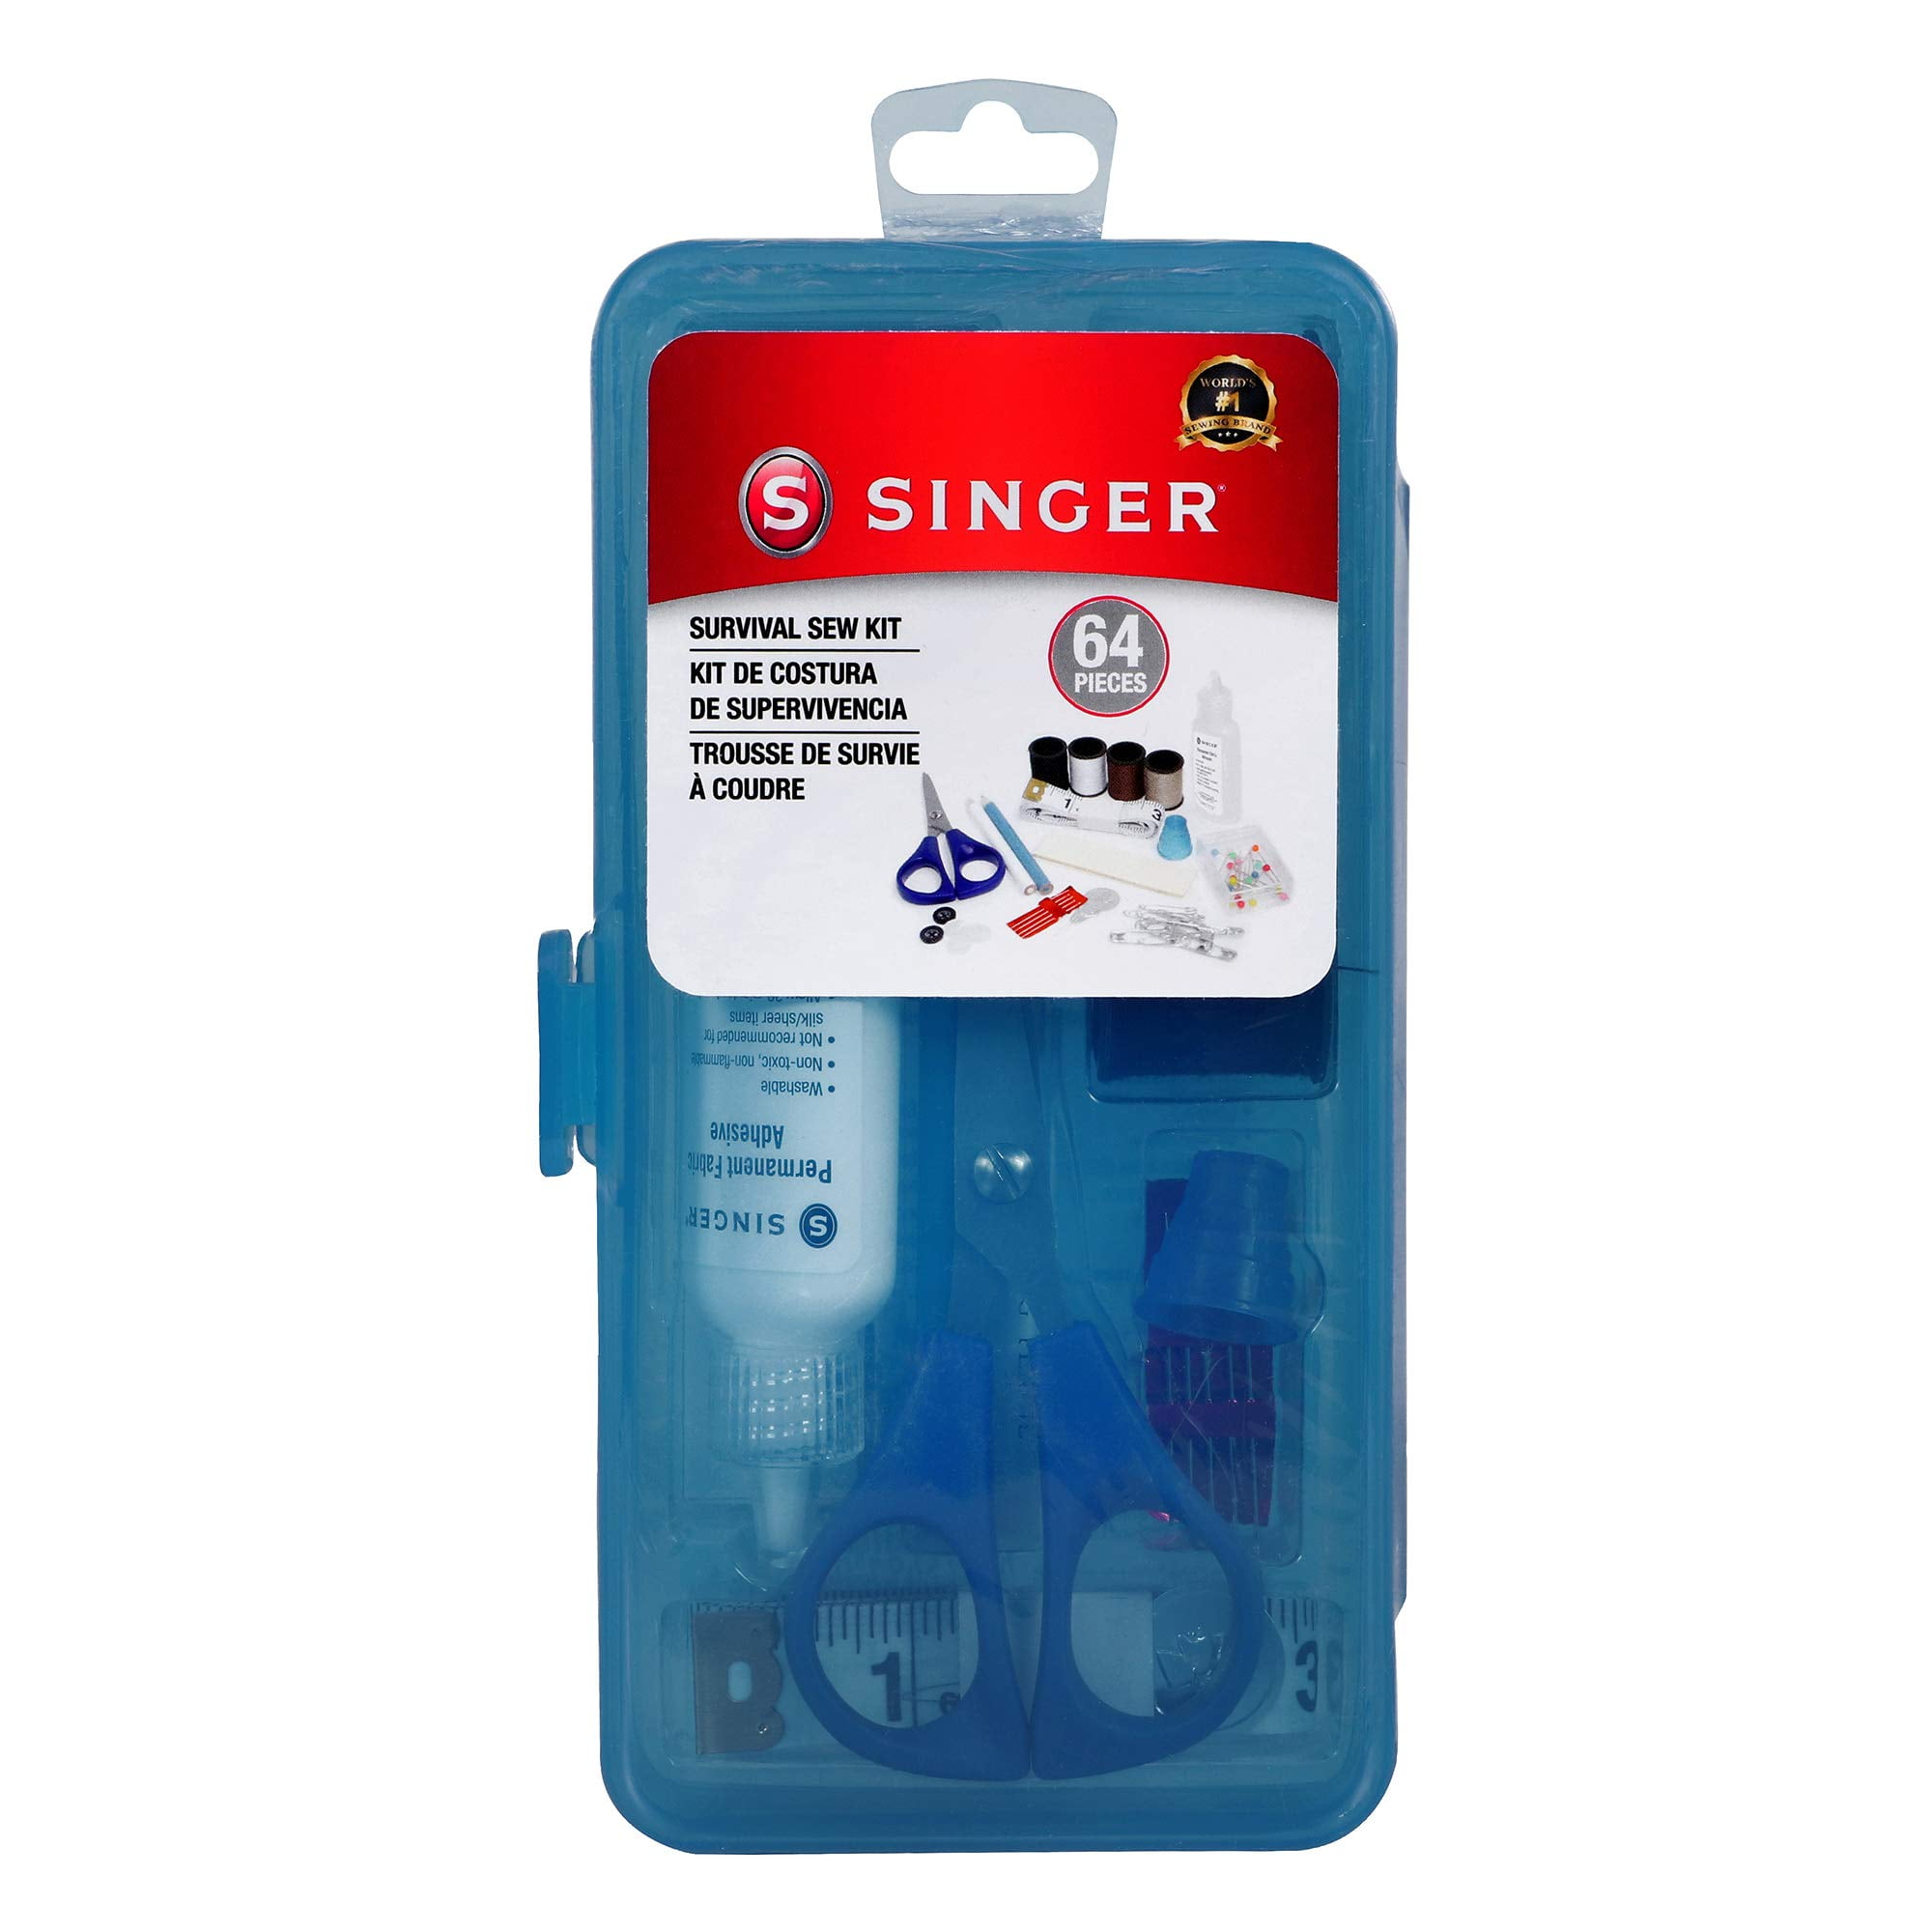 SINGER 01511 Survival Sew Kit (Pack of 6)